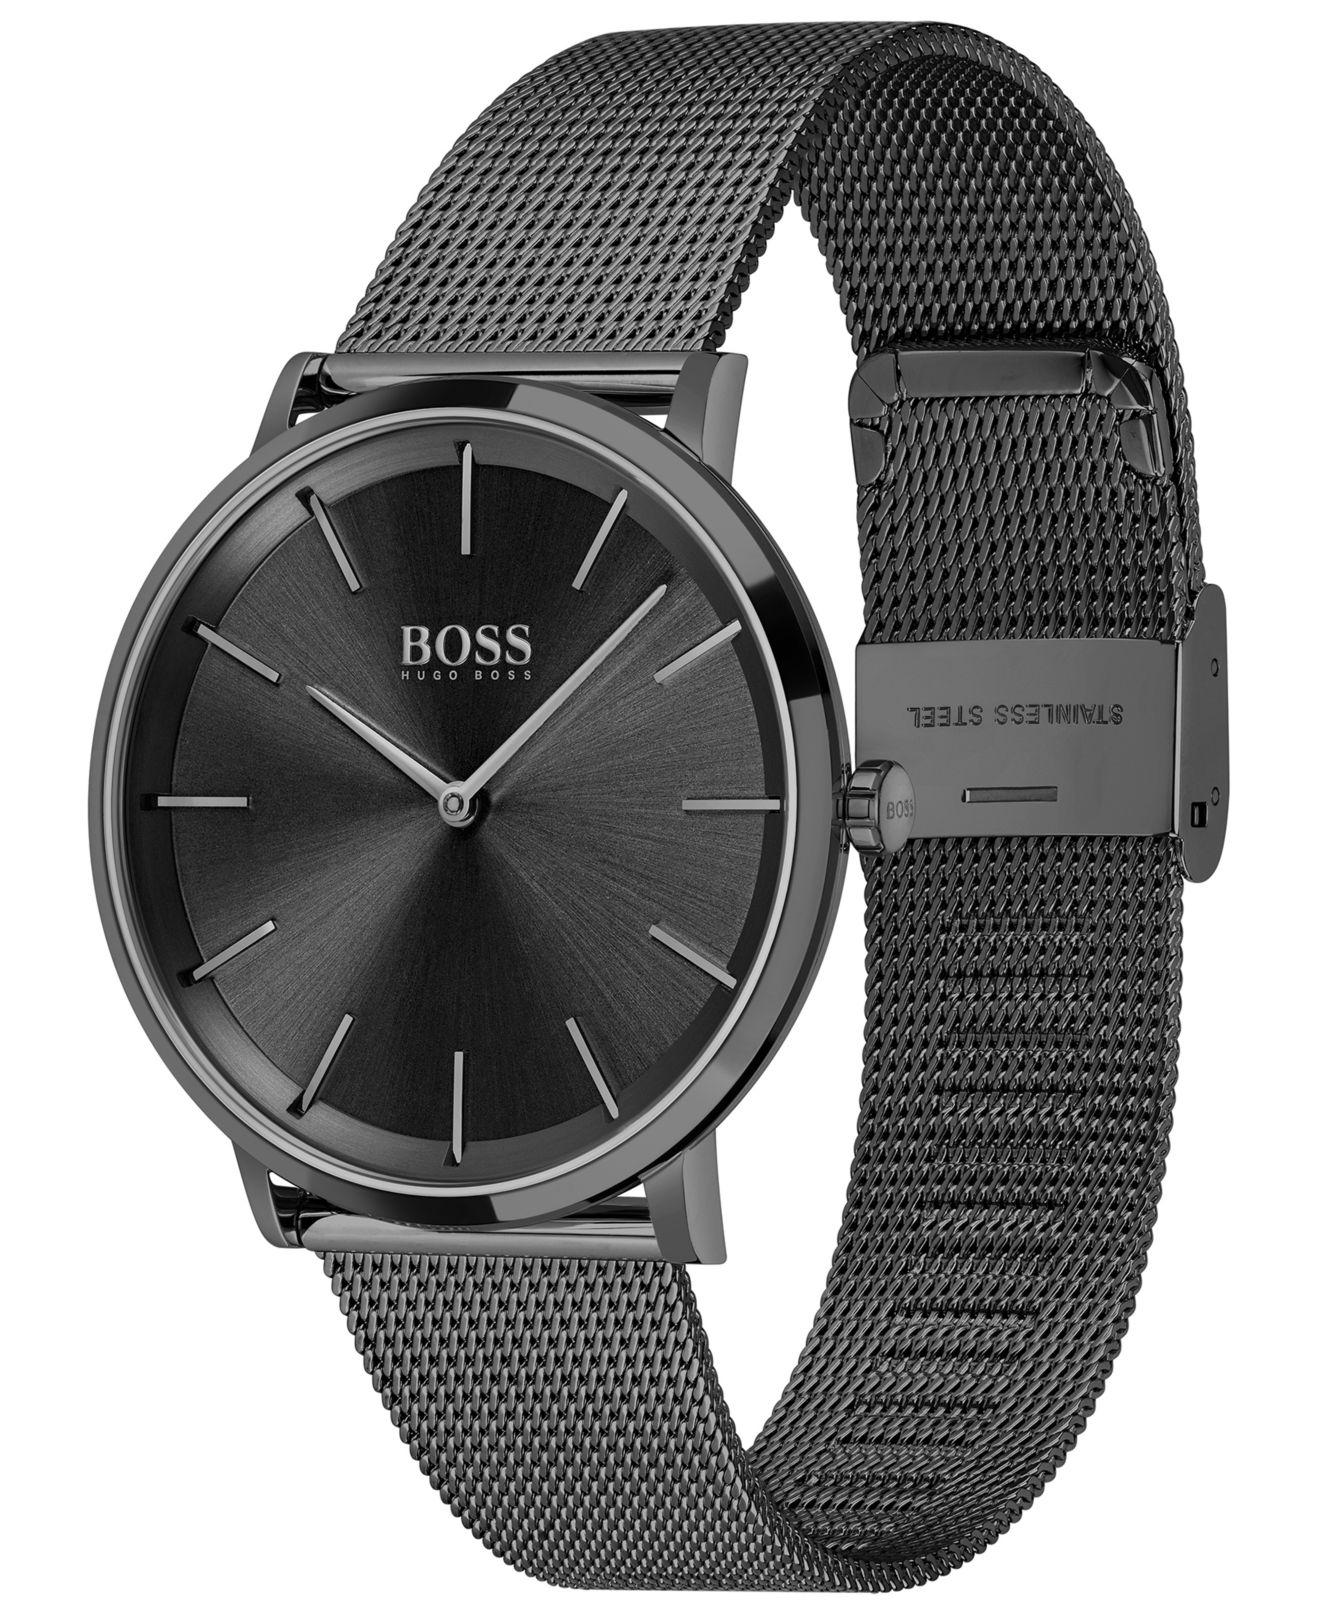 BOSS by HUGO BOSS Skyliner Mesh Strap Watch in Black for Men 